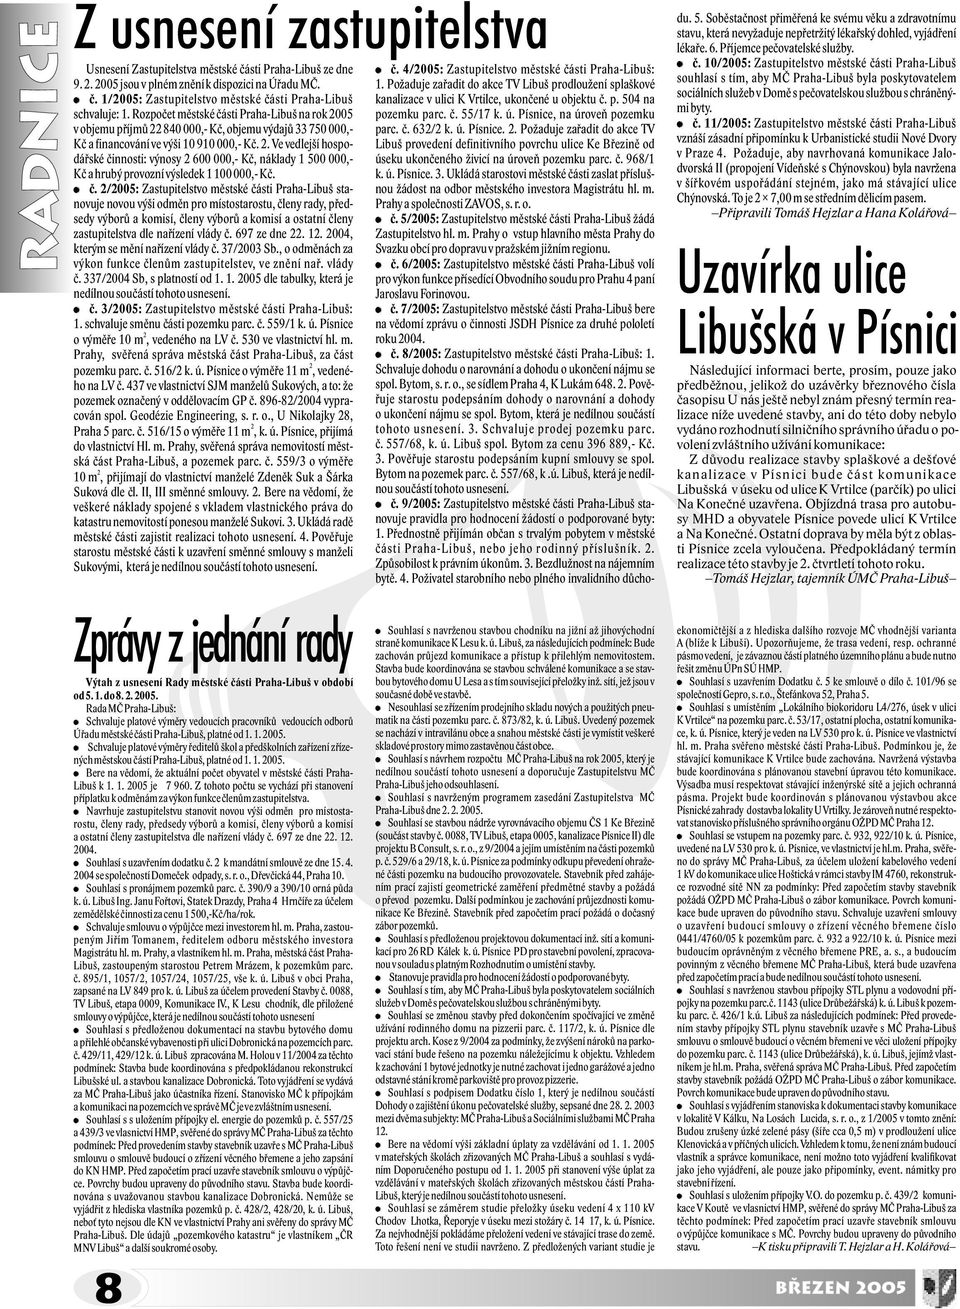 è. 2/2005: Zastupitelstvo mìstské èásti Praha-Libuš stanovuje novou výši odmìn pro místostarostu, èleny rady, pøedsedy výborù a komisí, èleny výborù a komisí a ostatní èleny zastupitelstva dle